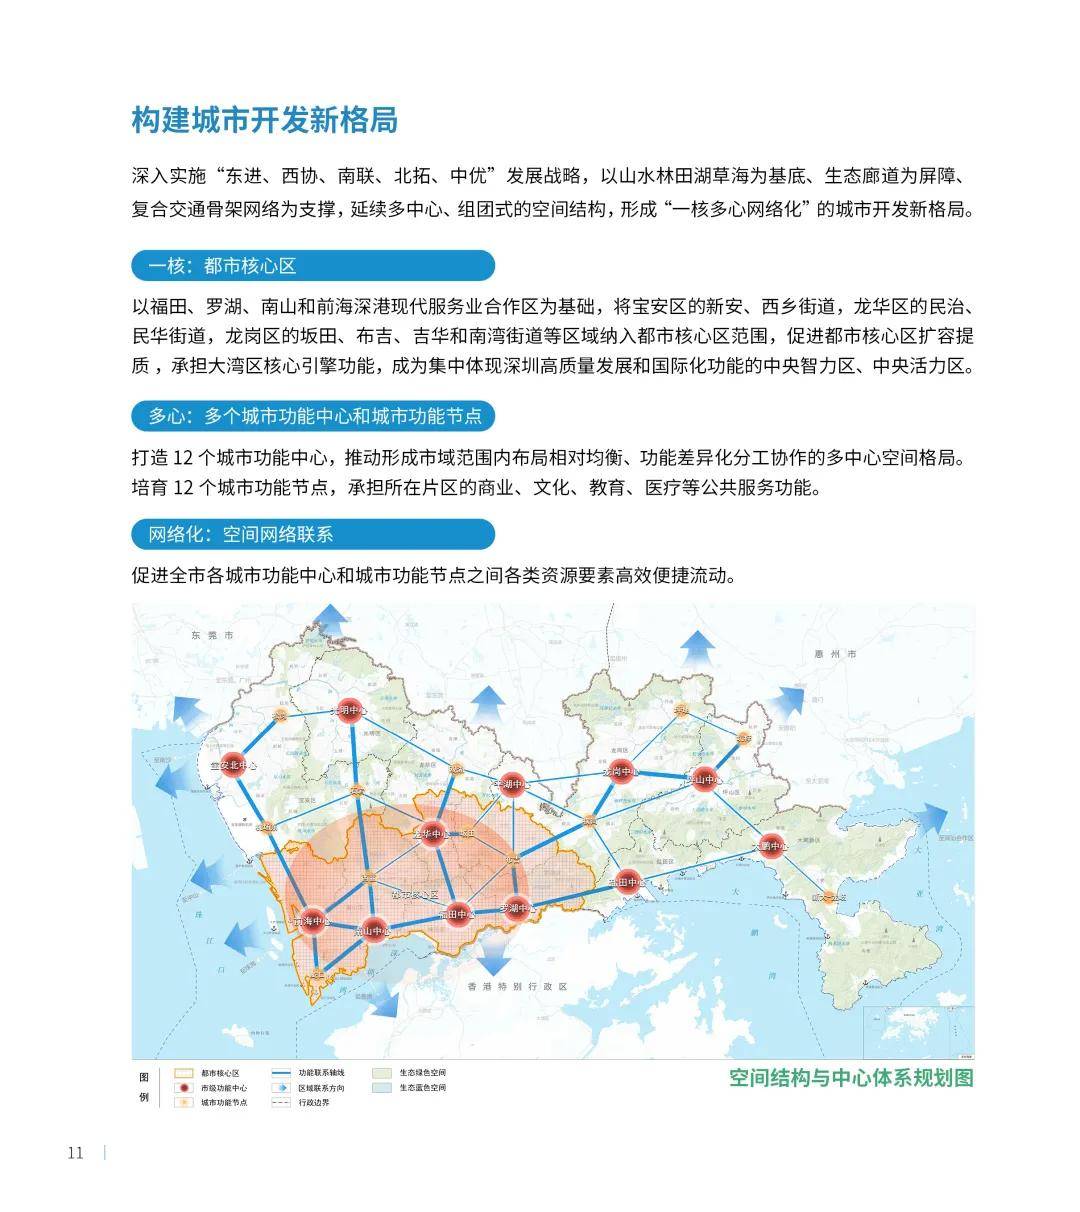 深圳官方最新中心地图,格局变了!